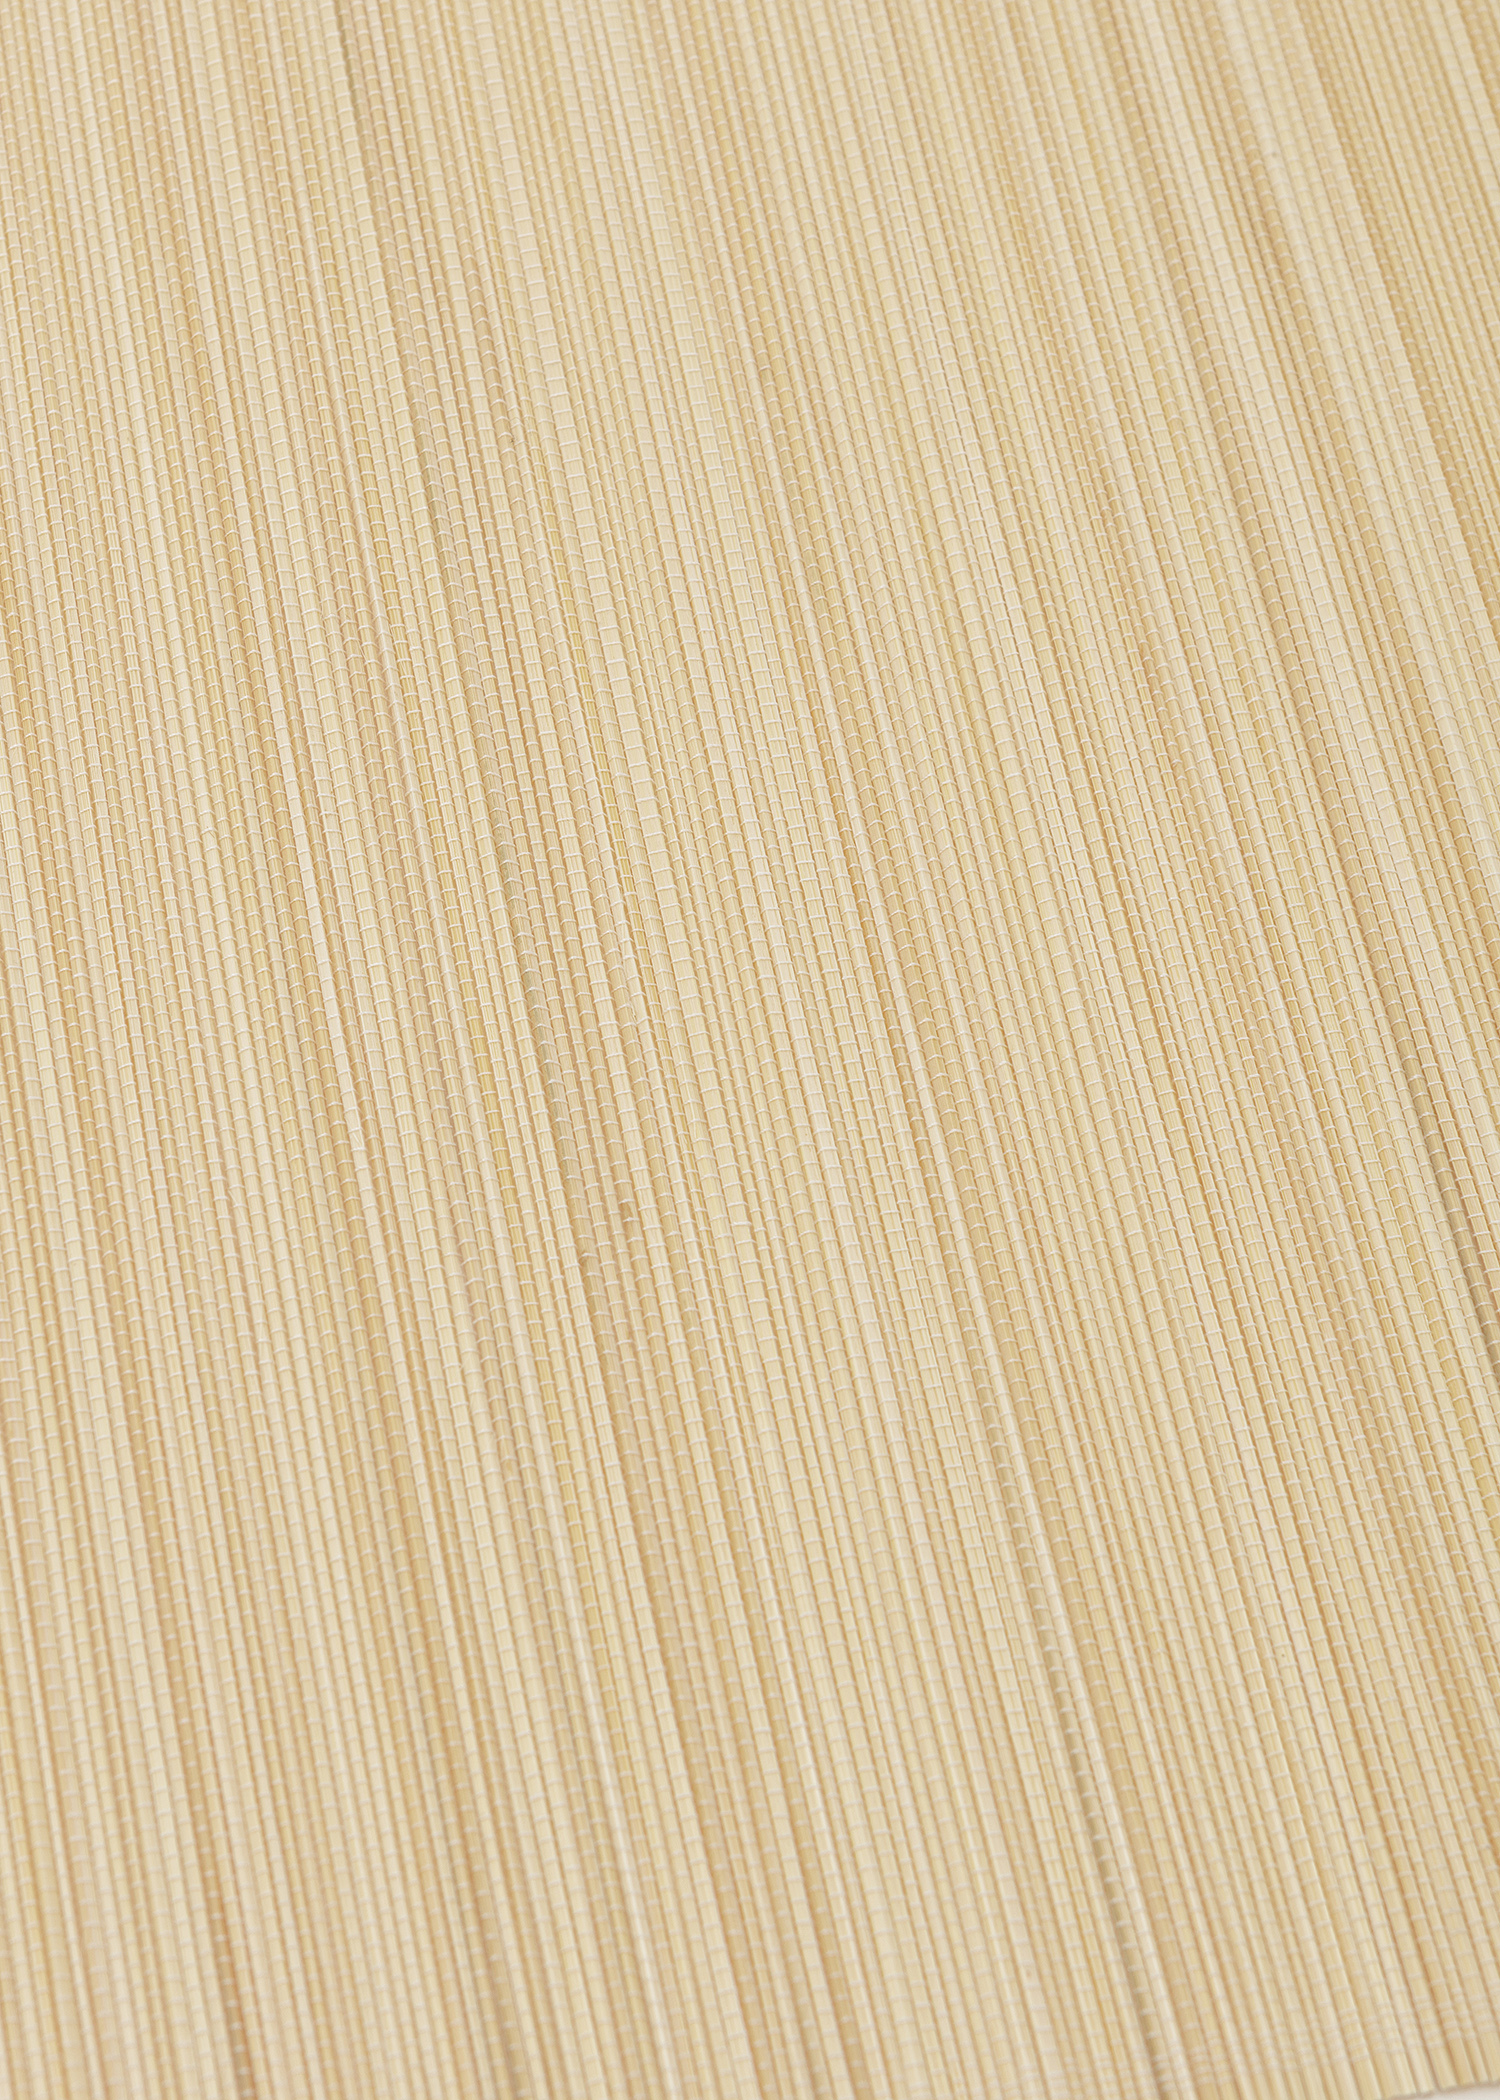 Bordstablett i bambu thumbnail 1